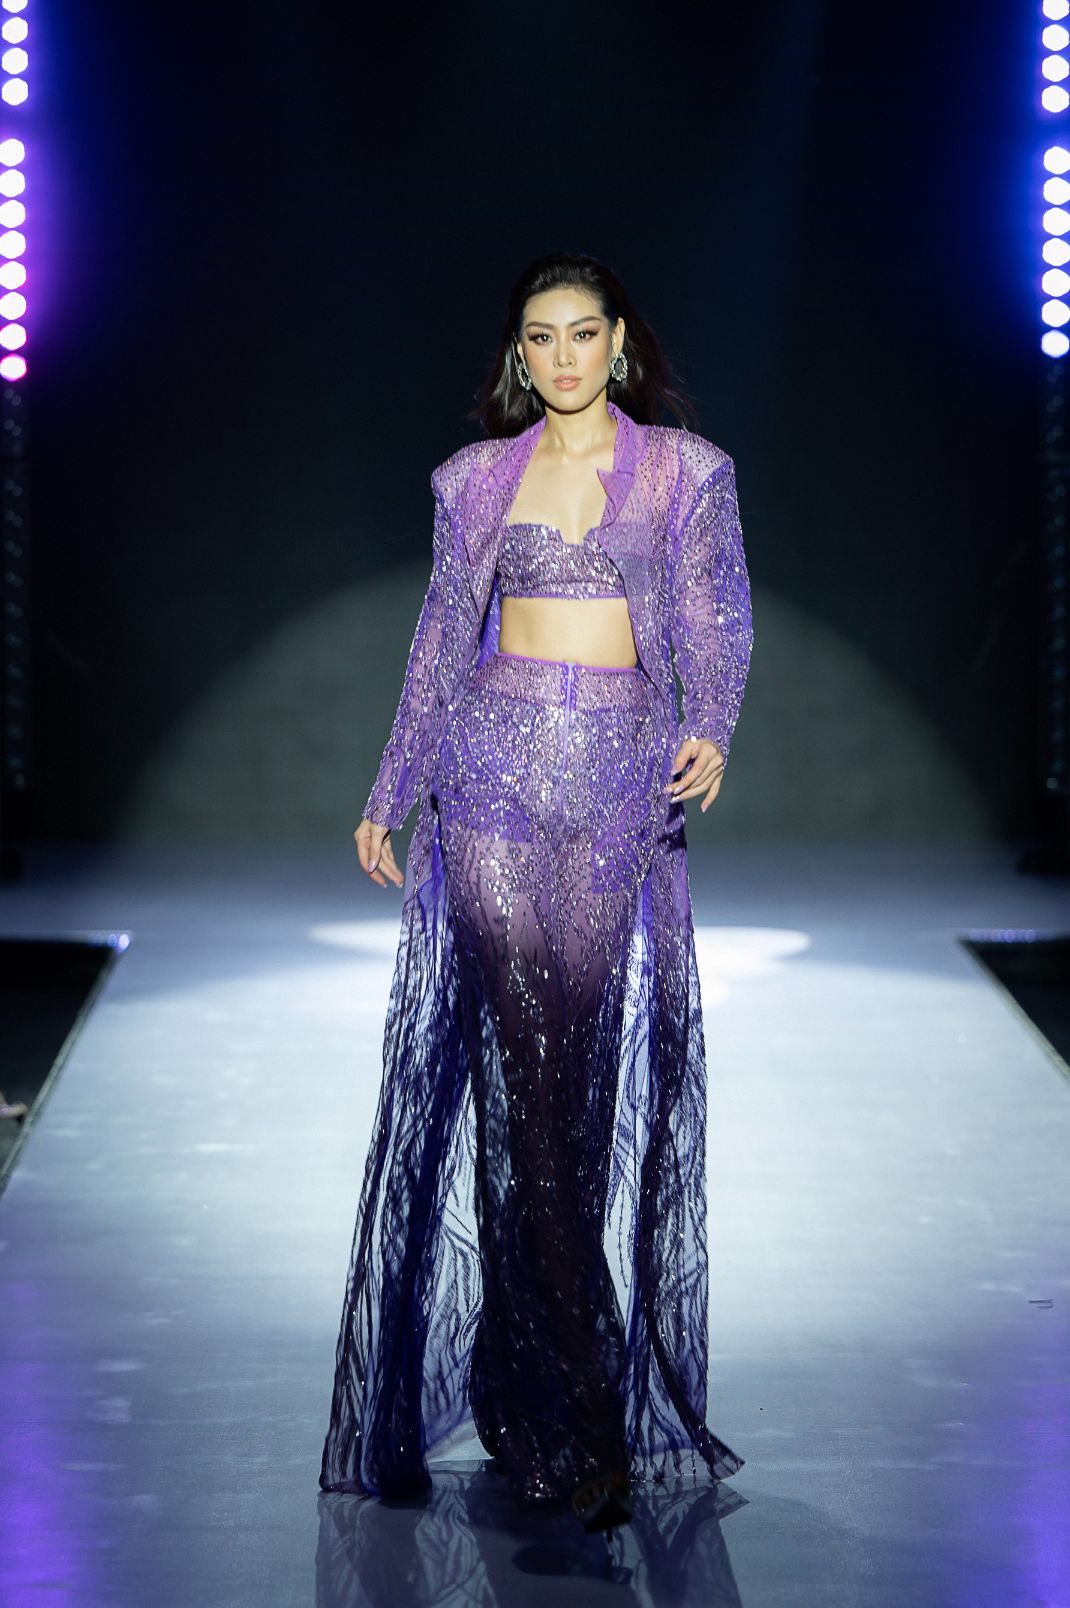 Hoa hậu Khánh Vân 4 Hoa hậu Khánh Vân chiêu đãi khán giả ngày hội thời trang đẳng cấp